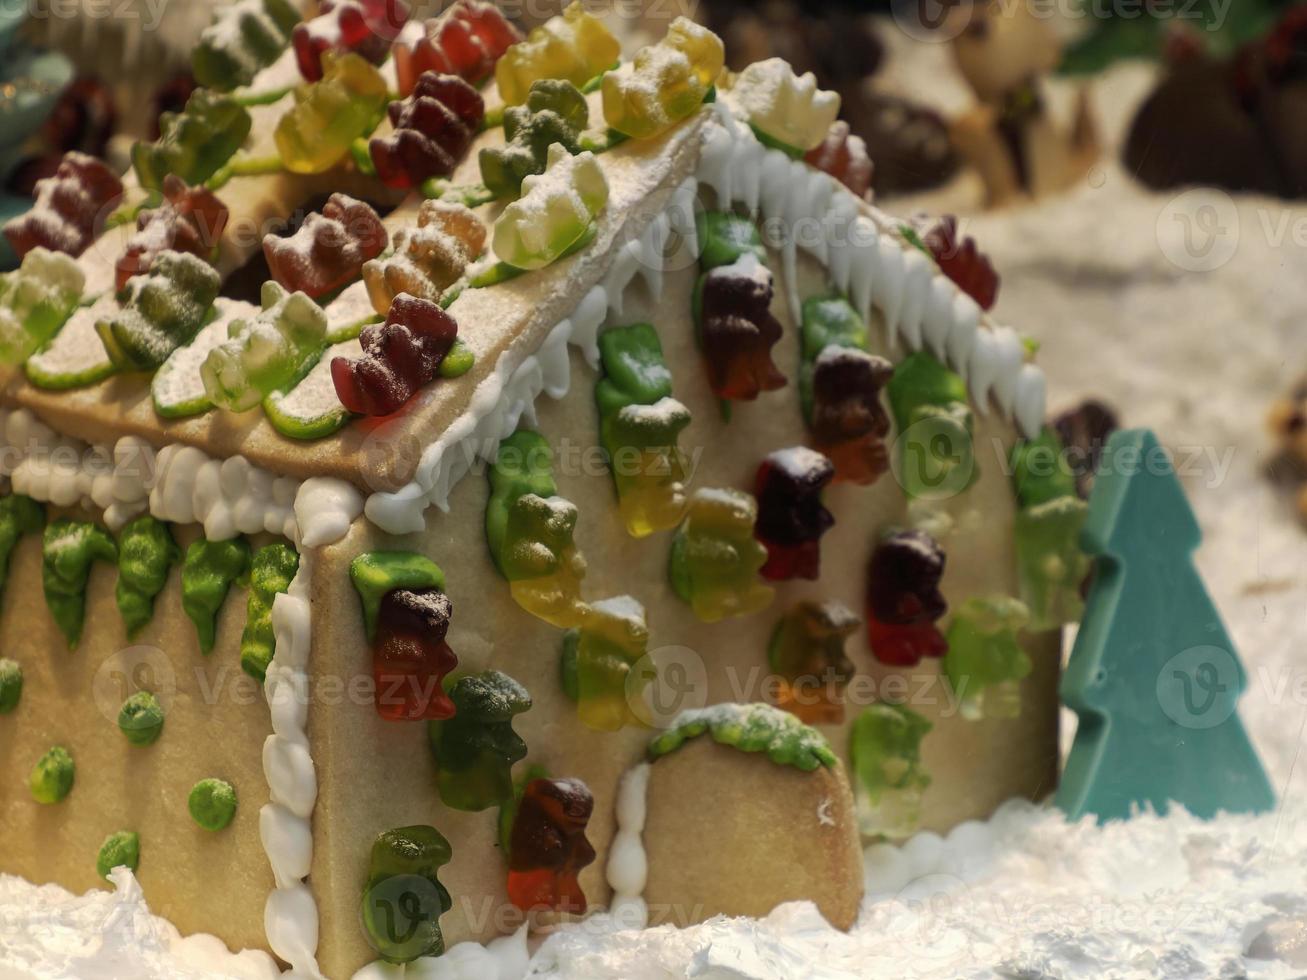 Kerstmis peperkoek en chocola huis versierd met snoep wandelstokken, heemst kegels kleverig bears foto